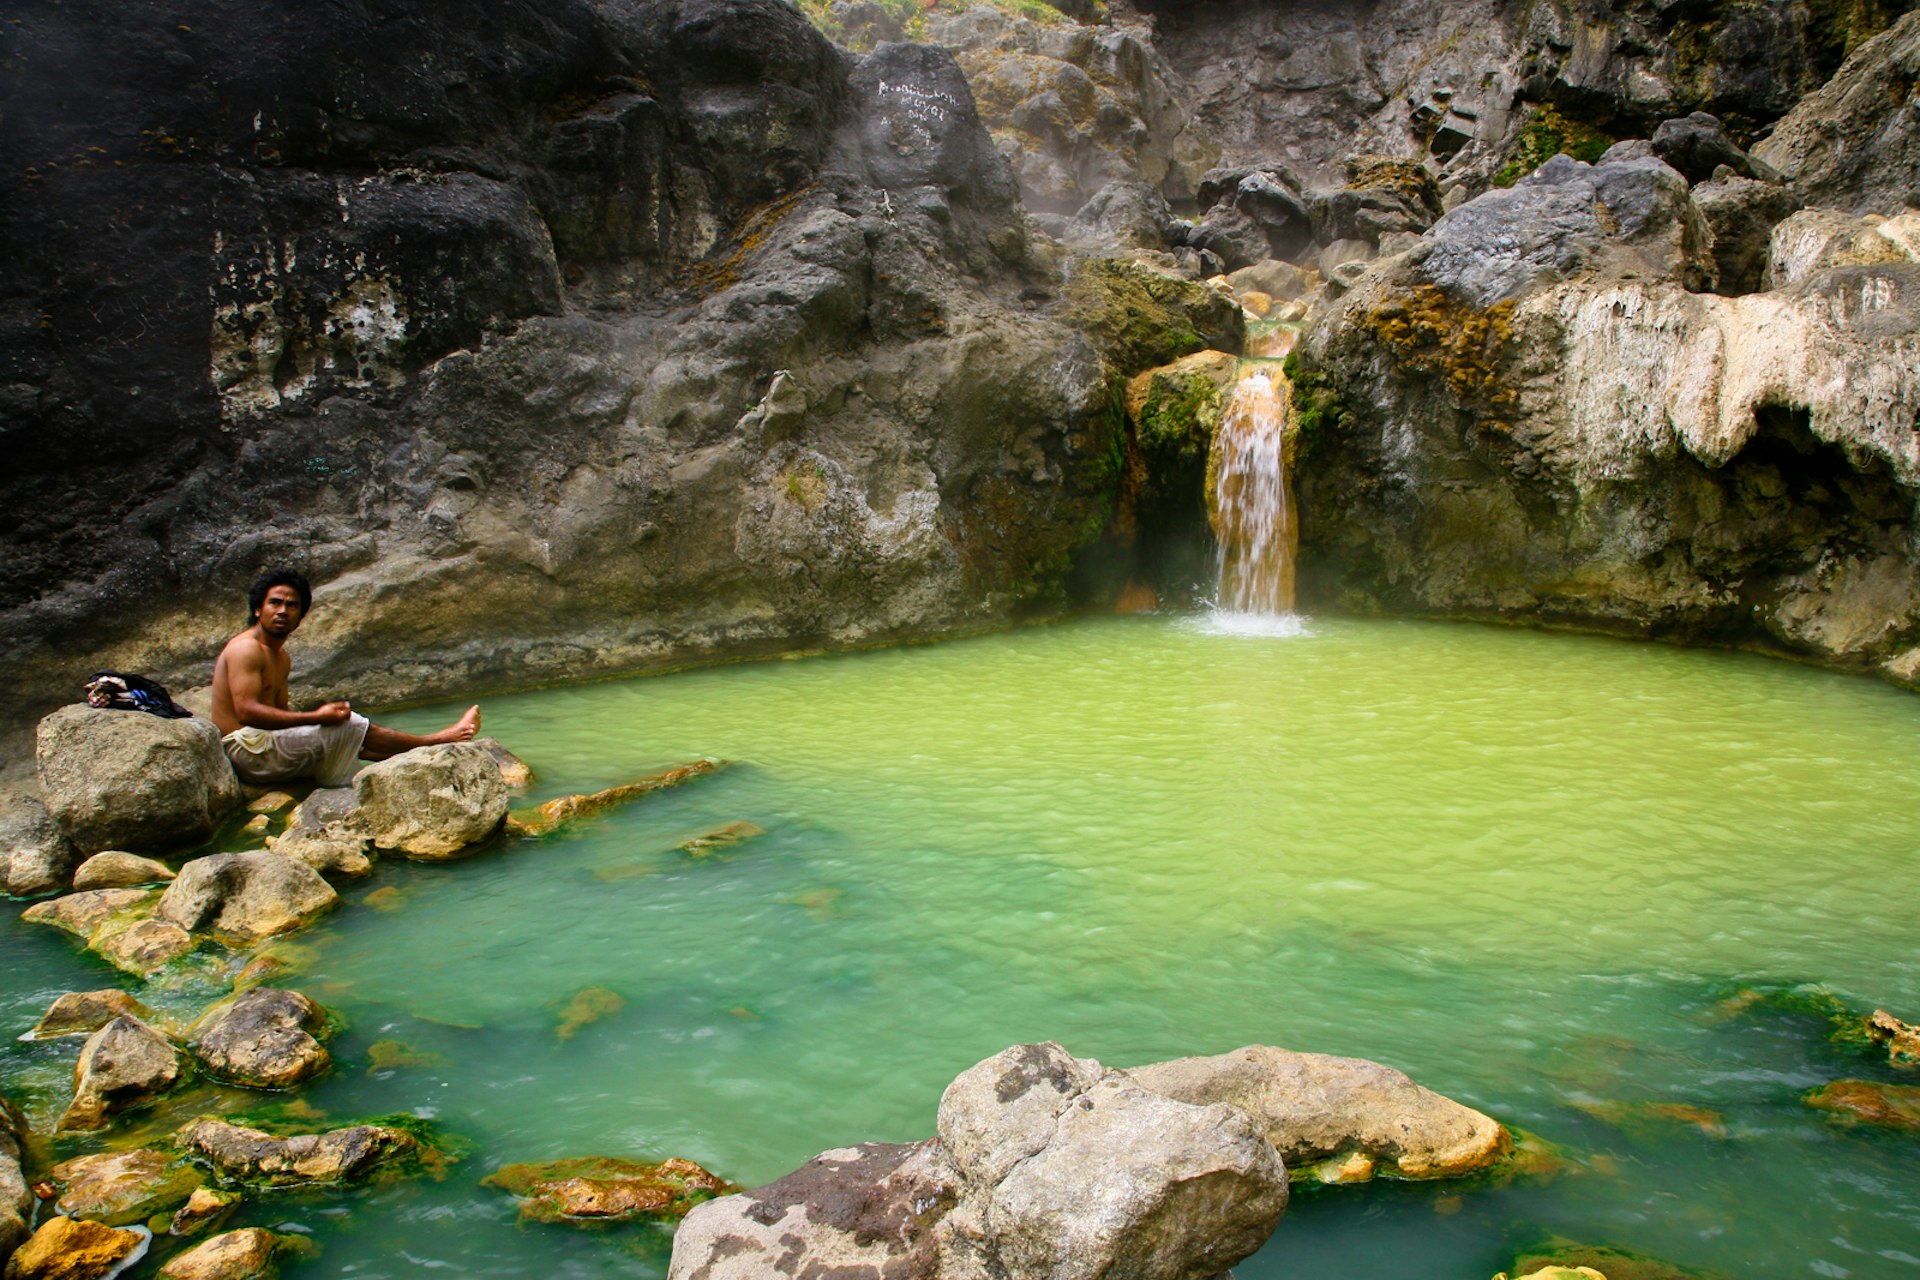 Hot springs along the Rinjani trek